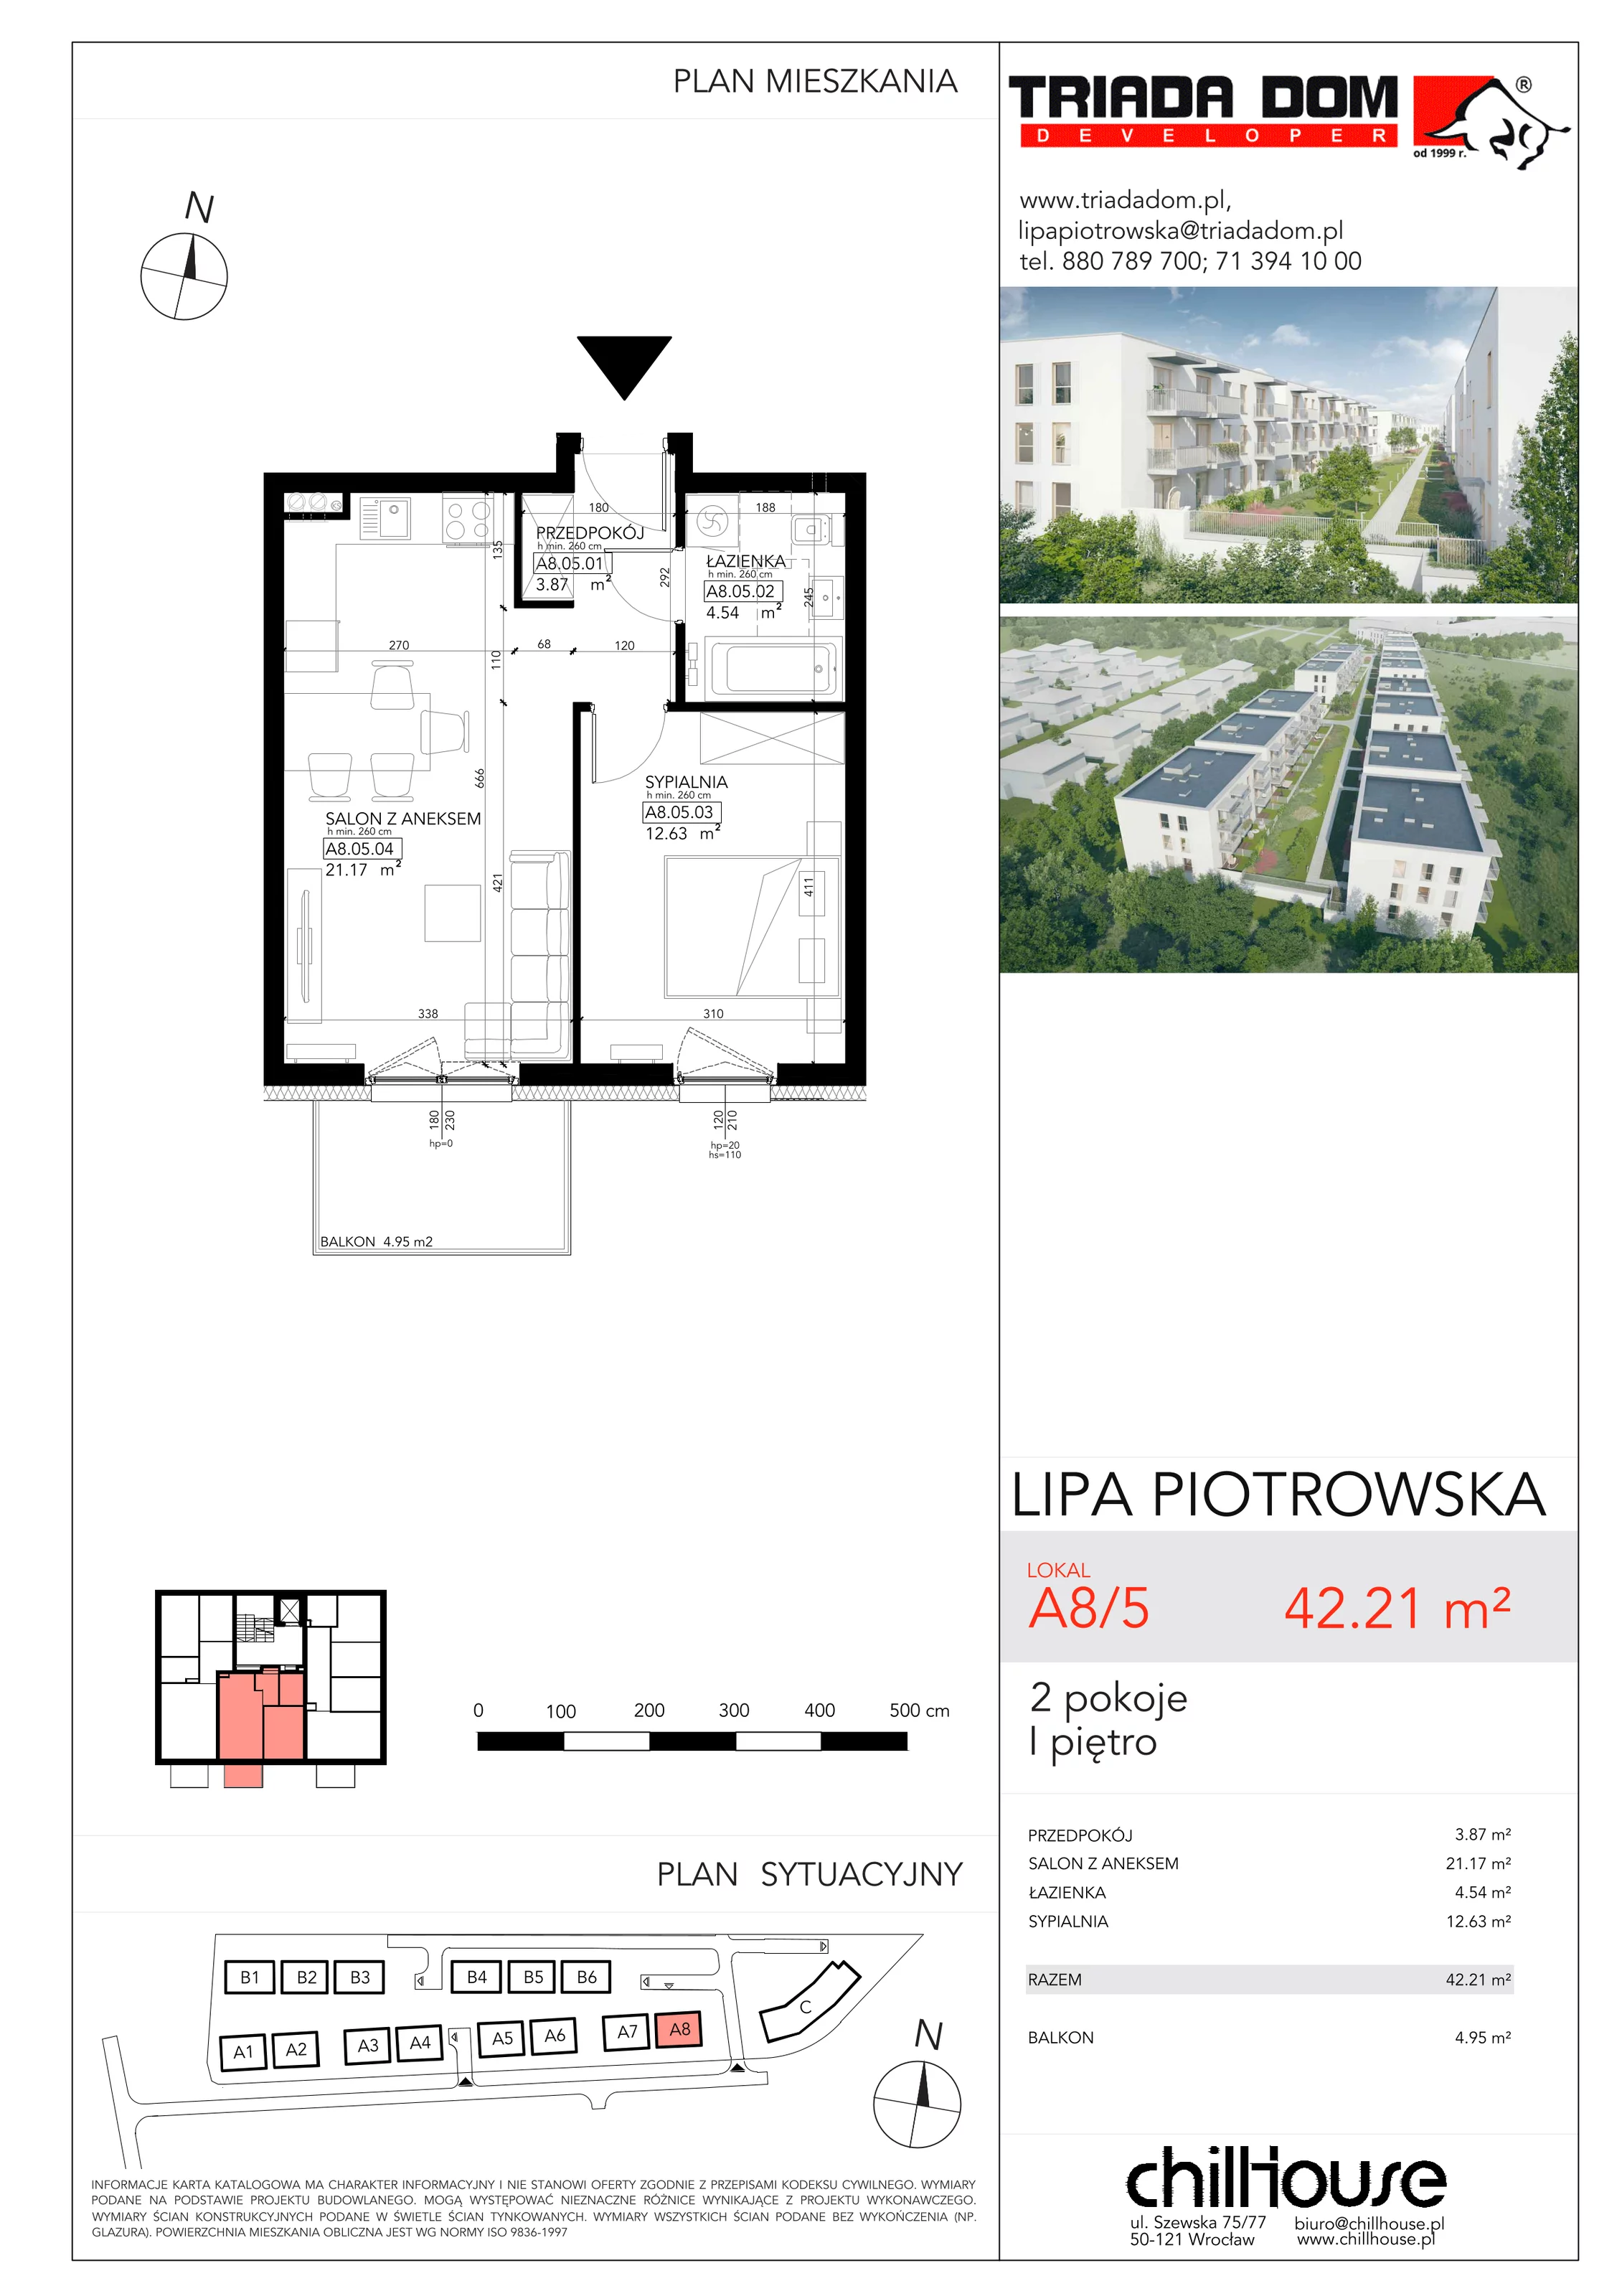 Mieszkanie 42,21 m², piętro 1, oferta nr A85, Lipa Piotrowska, Wrocław, Lipa Piotrowska, ul. Lawendowa / Melisowa